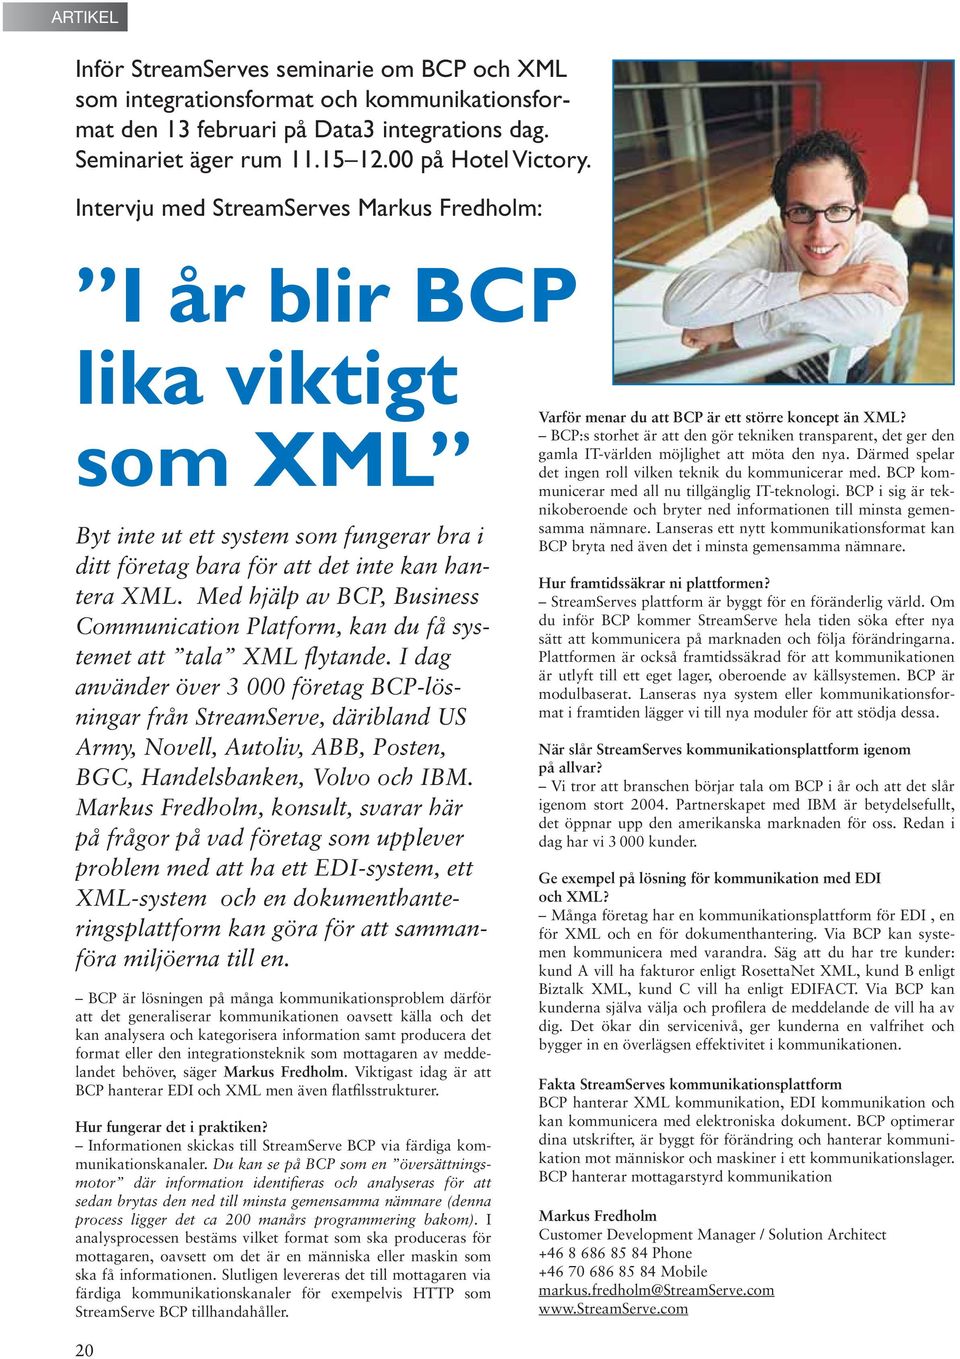 Med hjälp av BCP, Business Communication Platform, kan du få systemet att tala XML flytande.